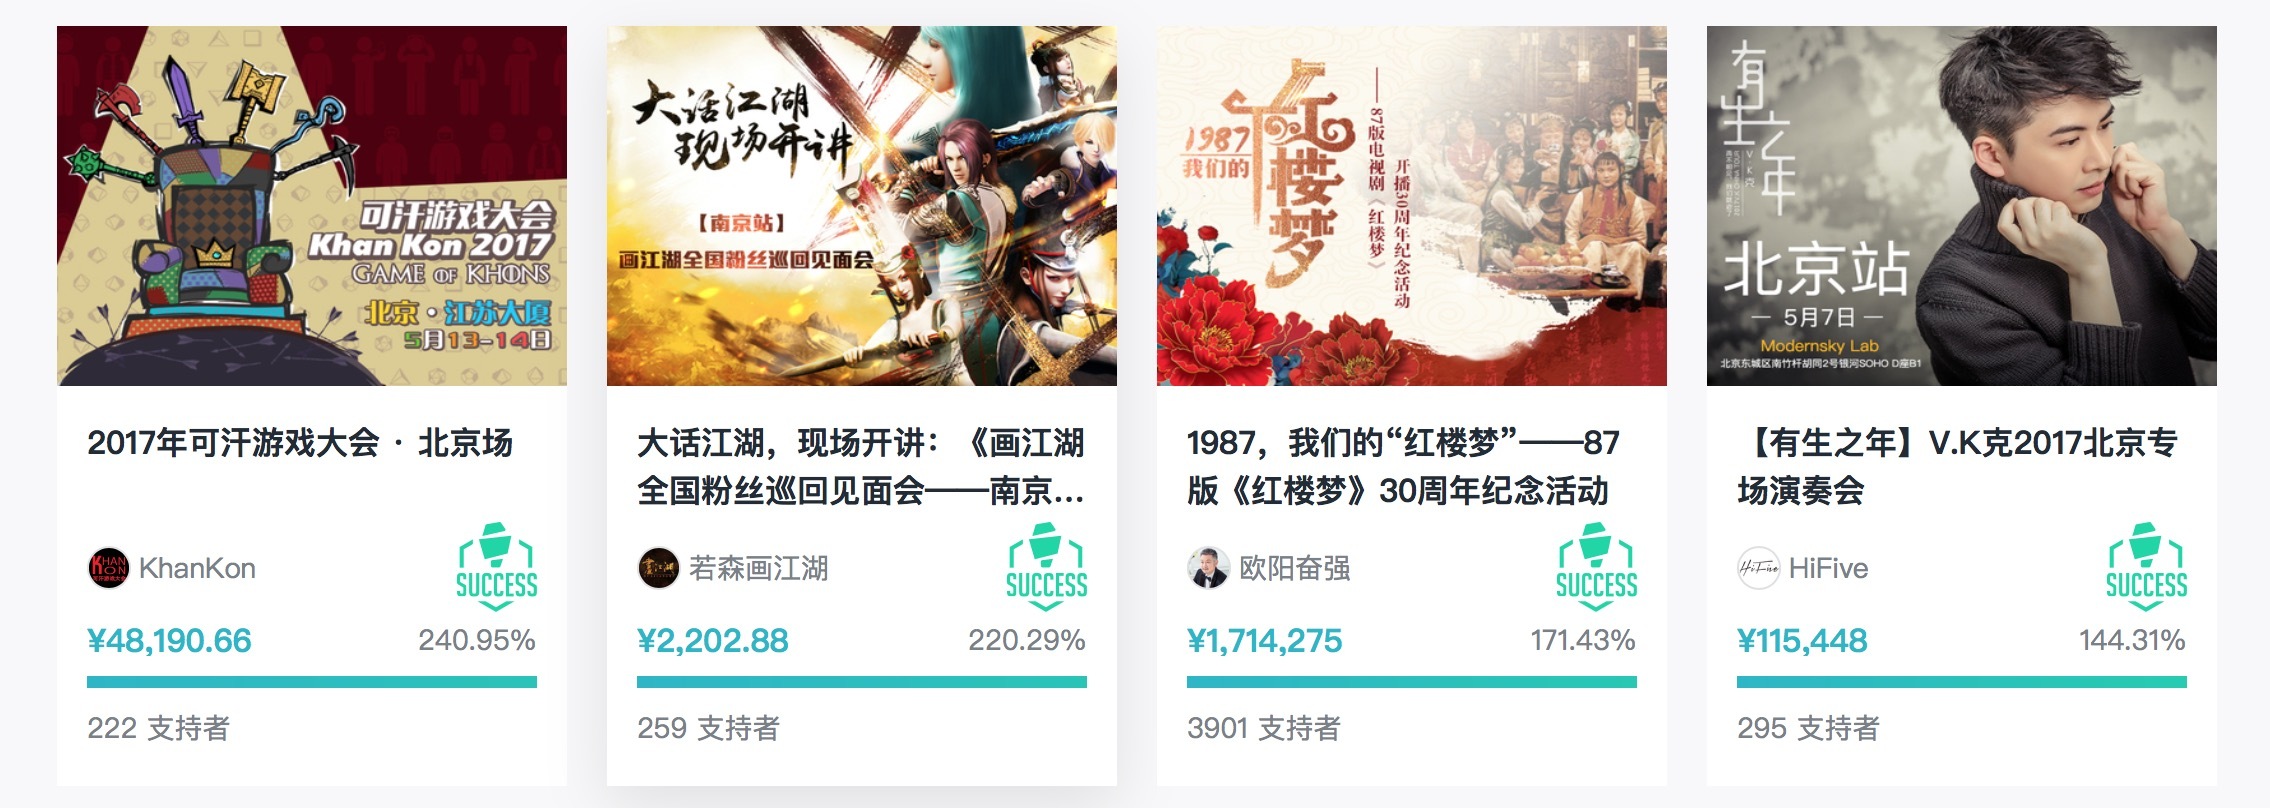 专注 ACG 领域，除了做平台还要搭社区，摩点能成为中国版的 Kickstarter 吗？